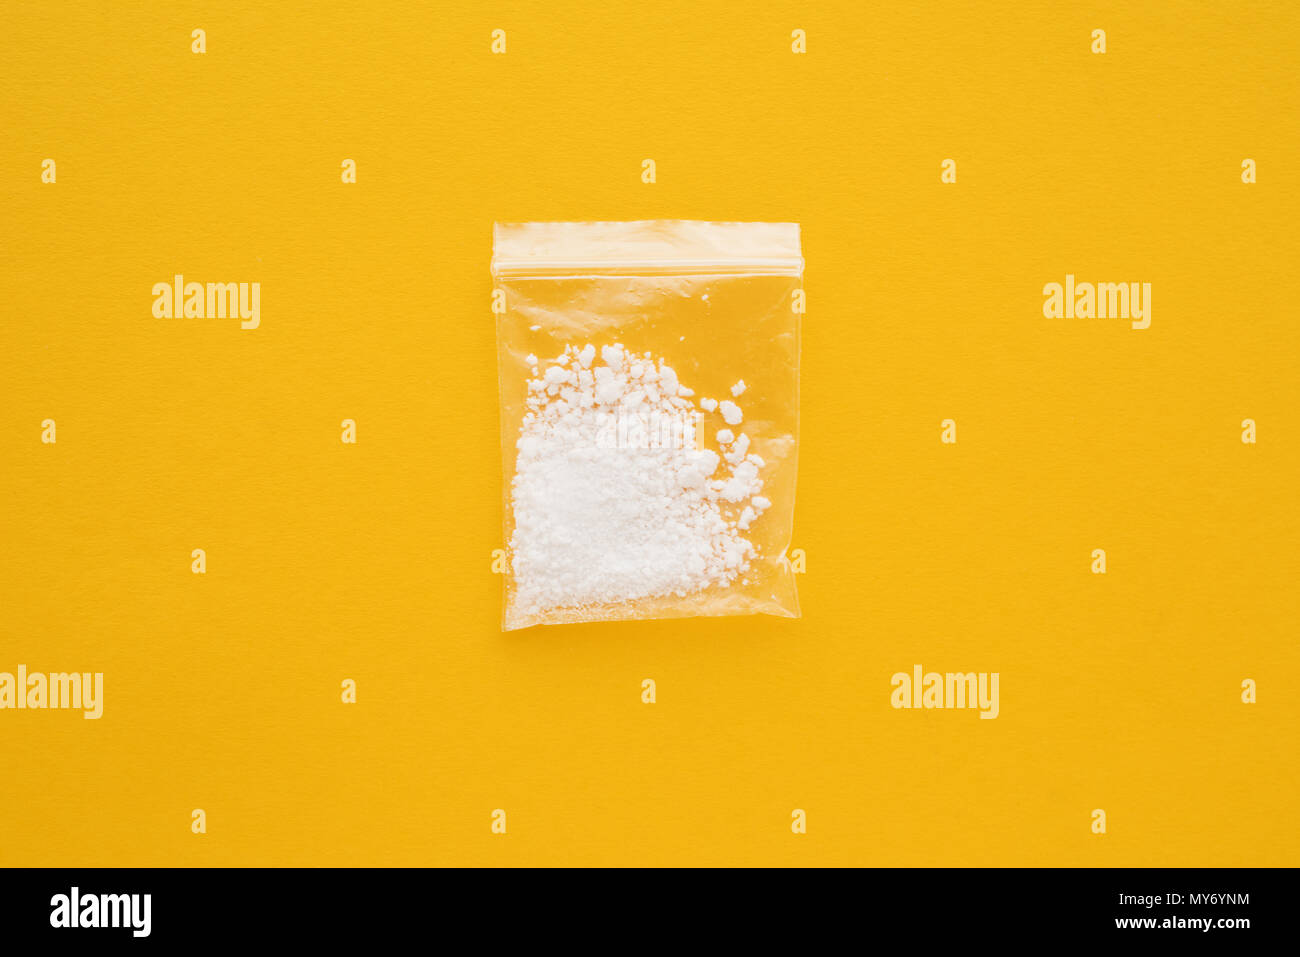 La cocaïne en poche refermable sur fond jaune lumineux Banque D'Images